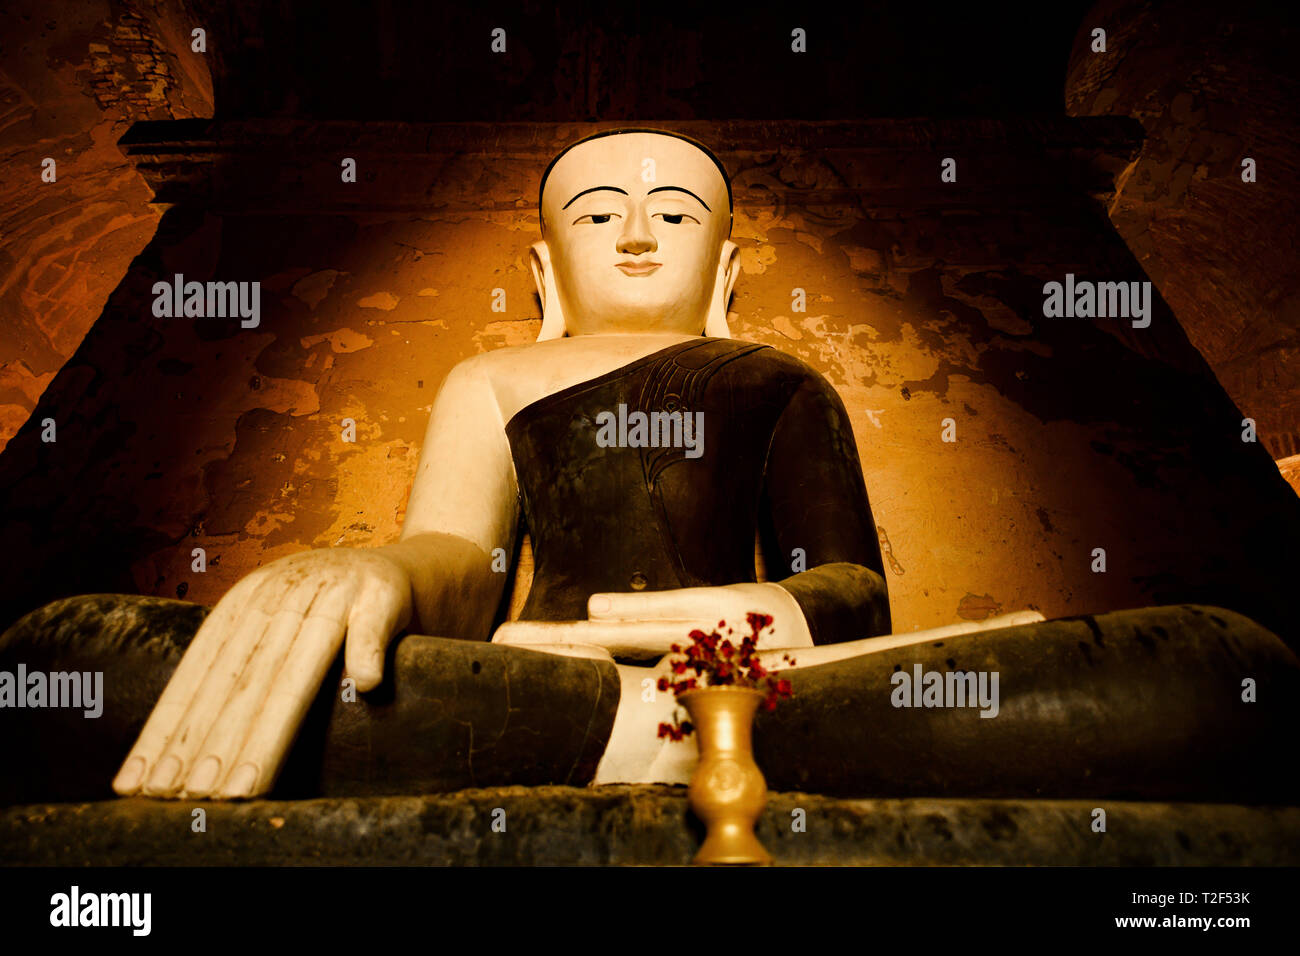 Statua del Buddha seduto in una piena posizione del loto illuminati dalla luce naturale del sole che filtra attraverso l'ingresso di un tempio di Bagan. Foto Stock